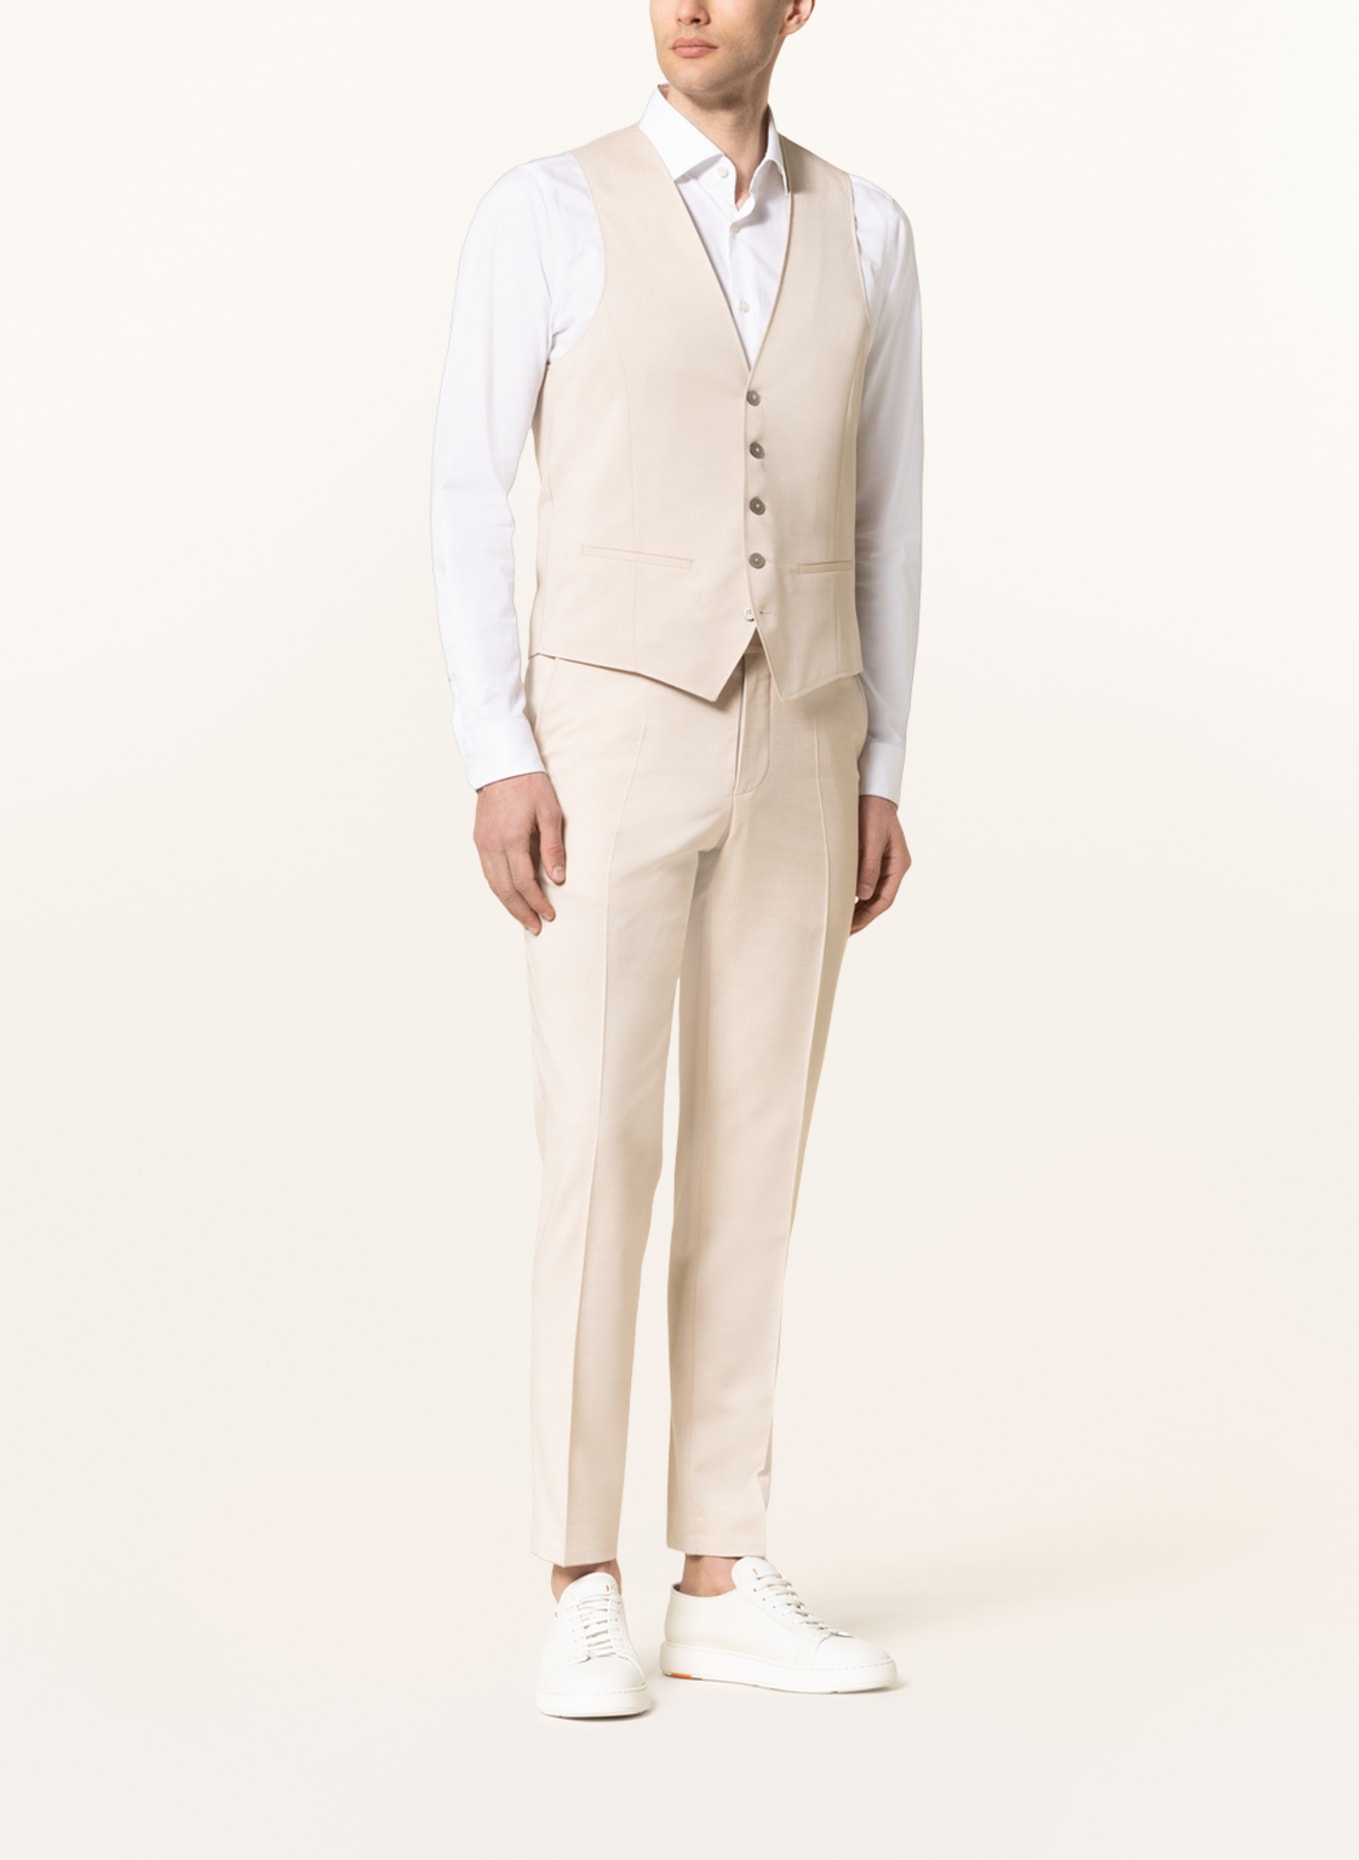 pierre cardin Suit vest GAB slim fit, Color: 1110 Pelican (Image 2)